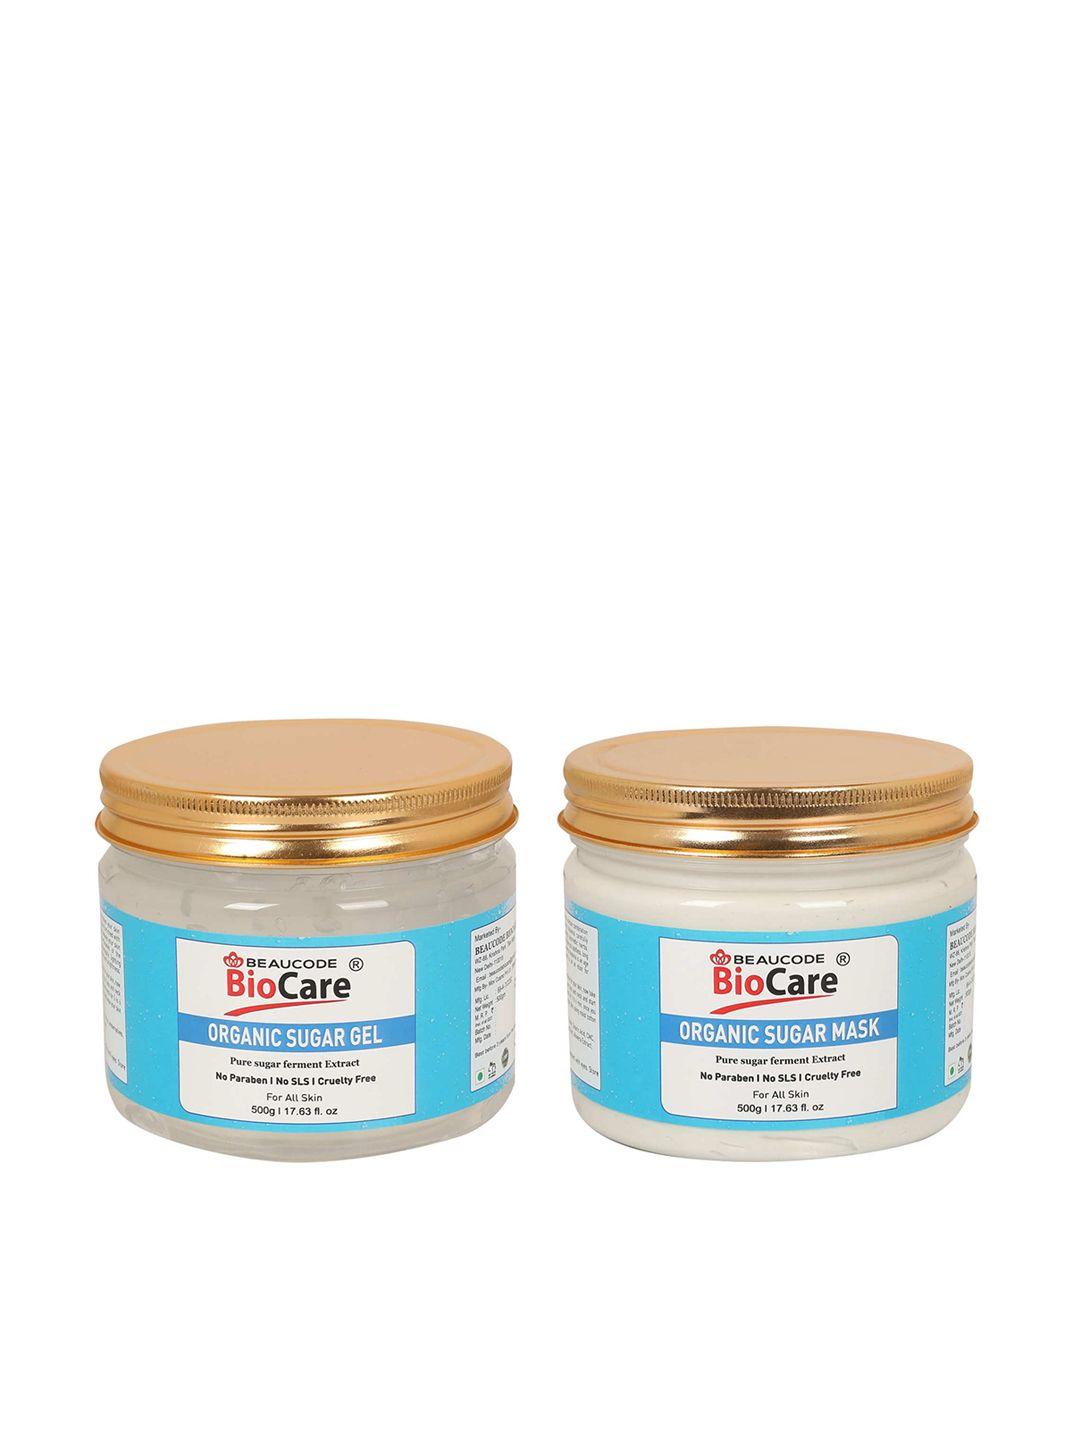 beaucode biocare set of sugar face mask & gel - 500 g each